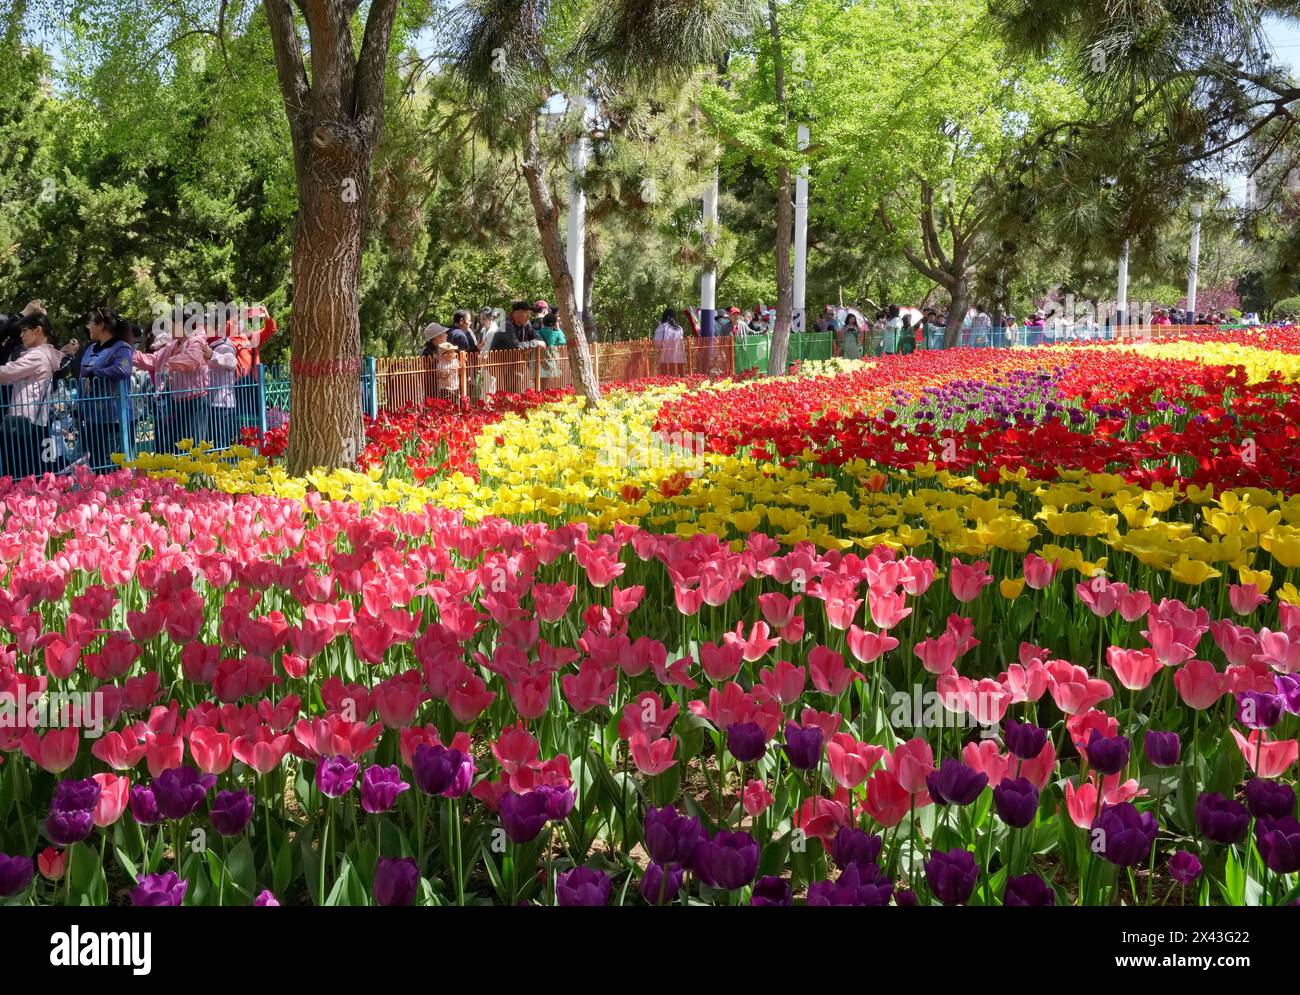 Qinhuangdao, chinesische Provinz Hebei. April 2024 30. Touristen sehen Tulpen in einem Park in Qinhuangdao, nordchinesischer Provinz Hebei, 30. April 2024. Quelle: Yang Shiyao/Xinhua/Alamy Live News Stockfoto